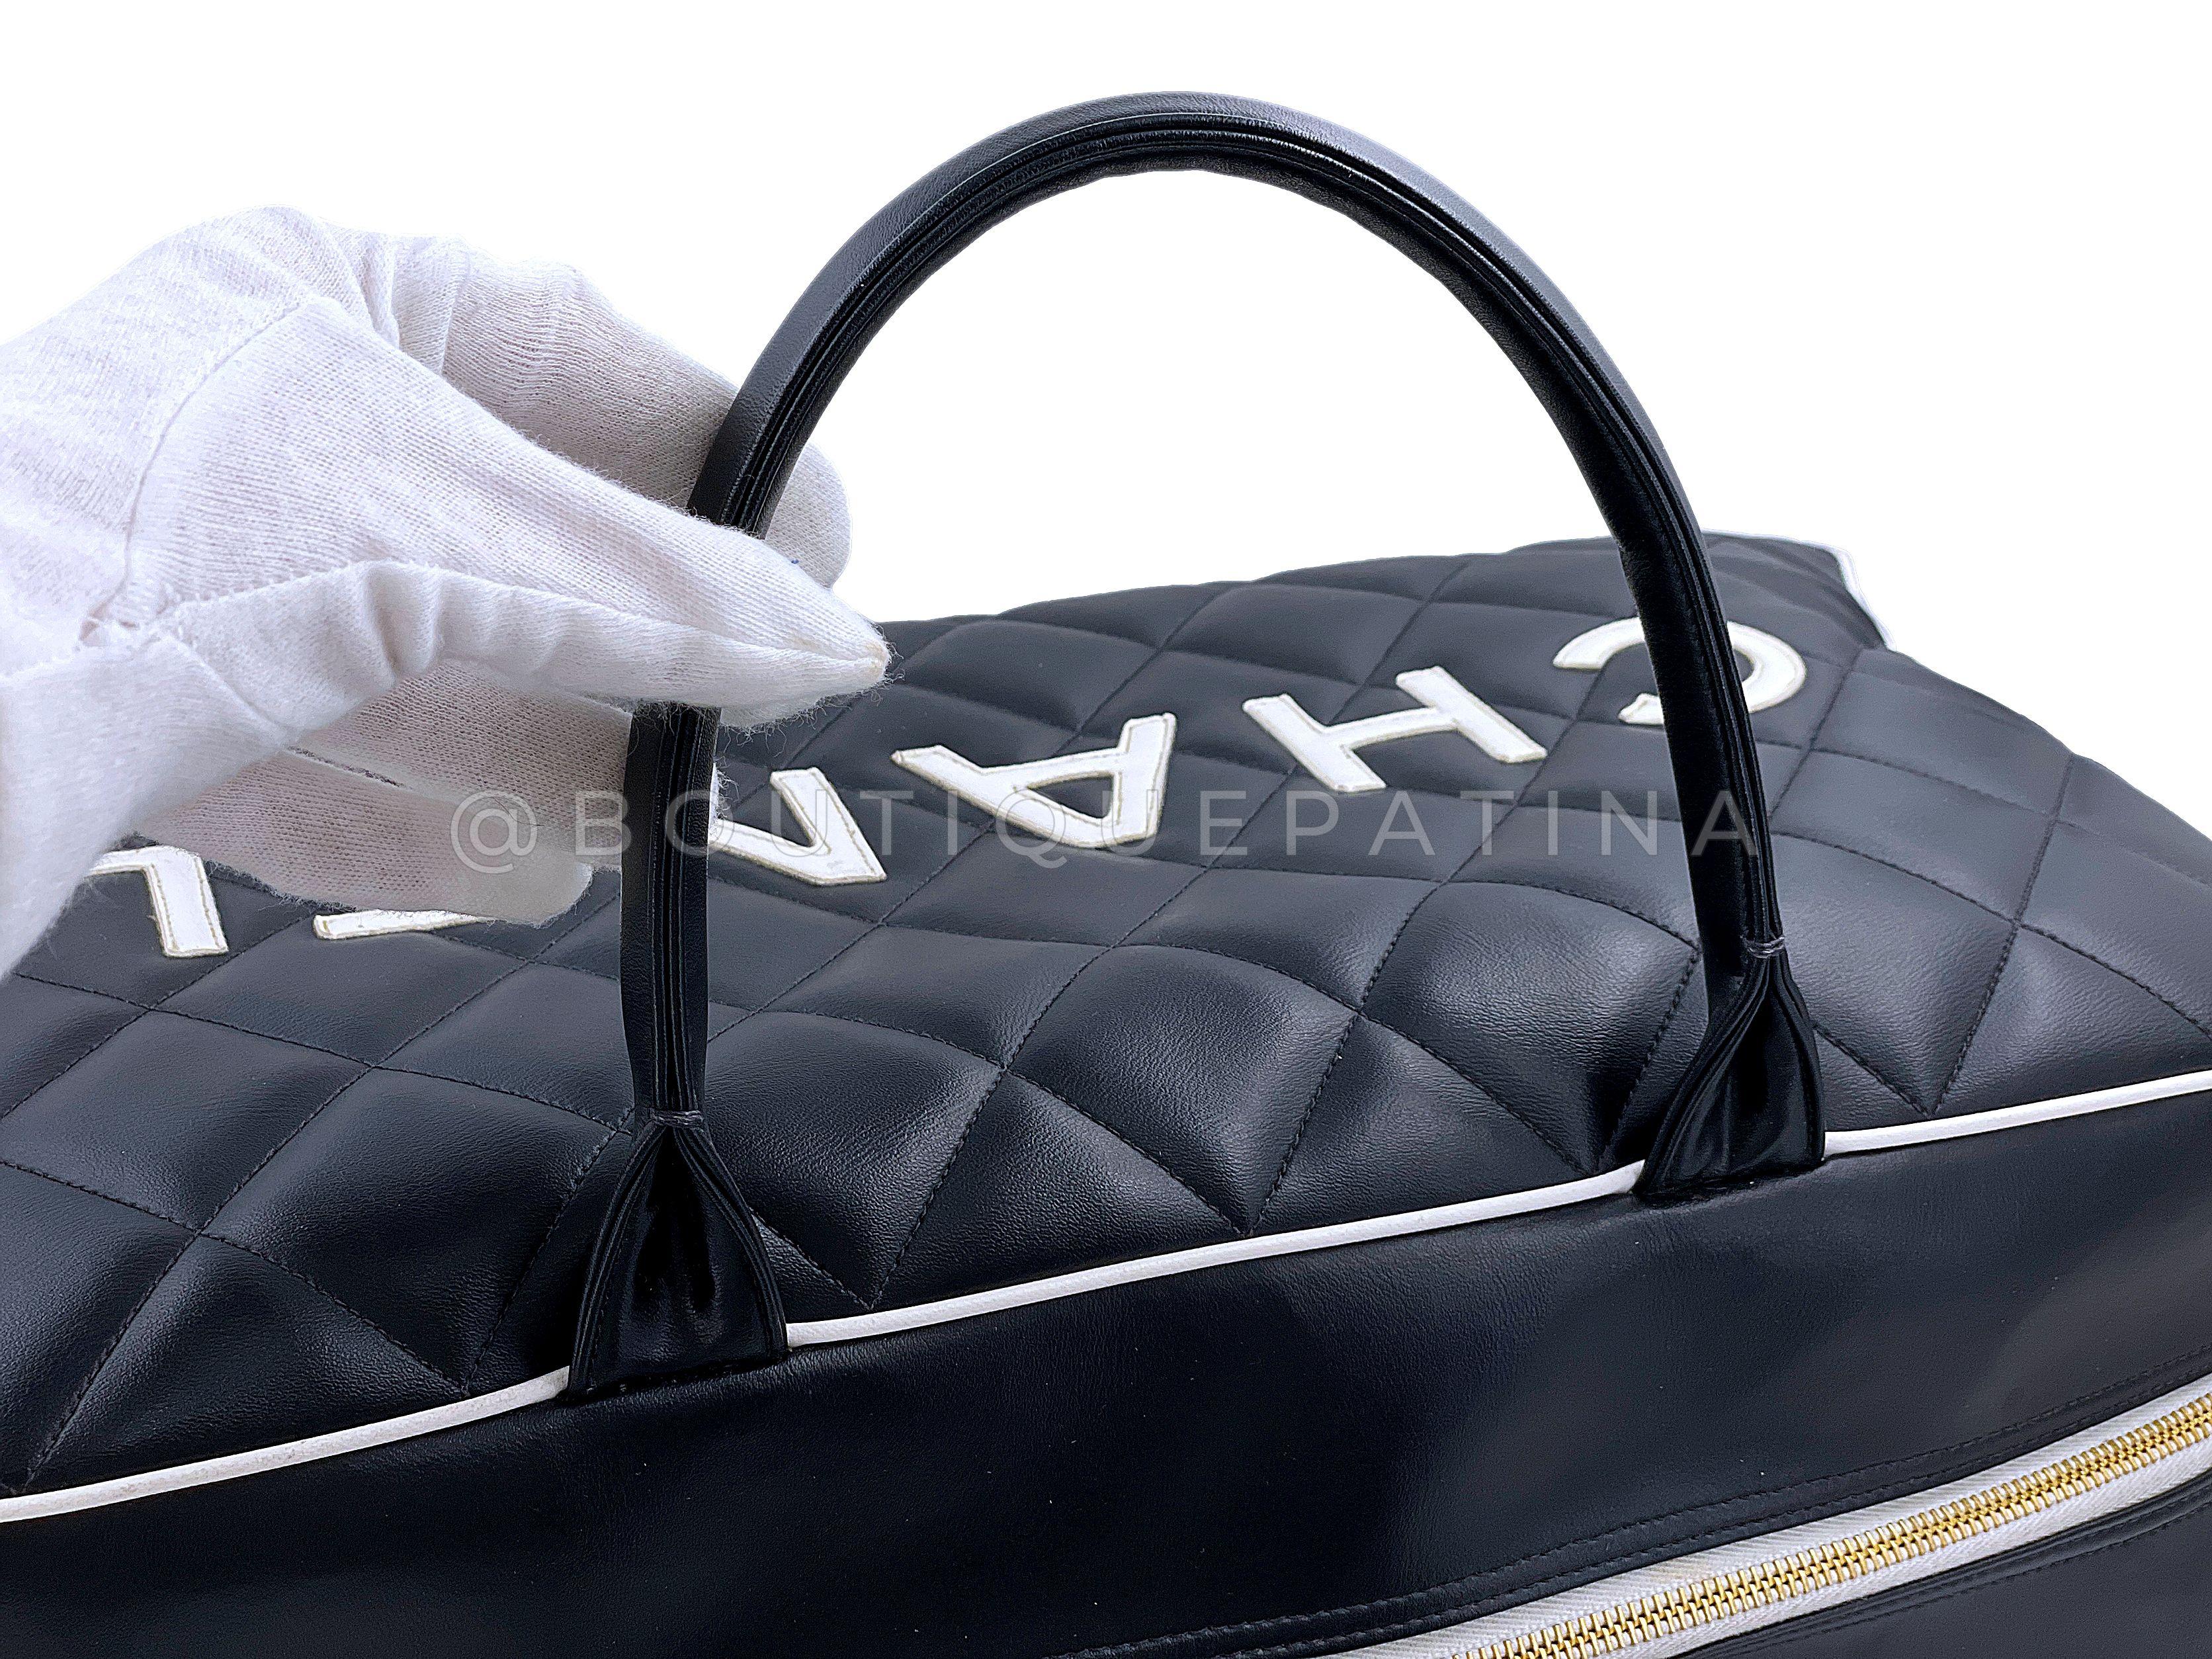 Pristine Chanel 1995 Vintage Black Letter Large Bowler Duffle Bag 67789 For Sale 4